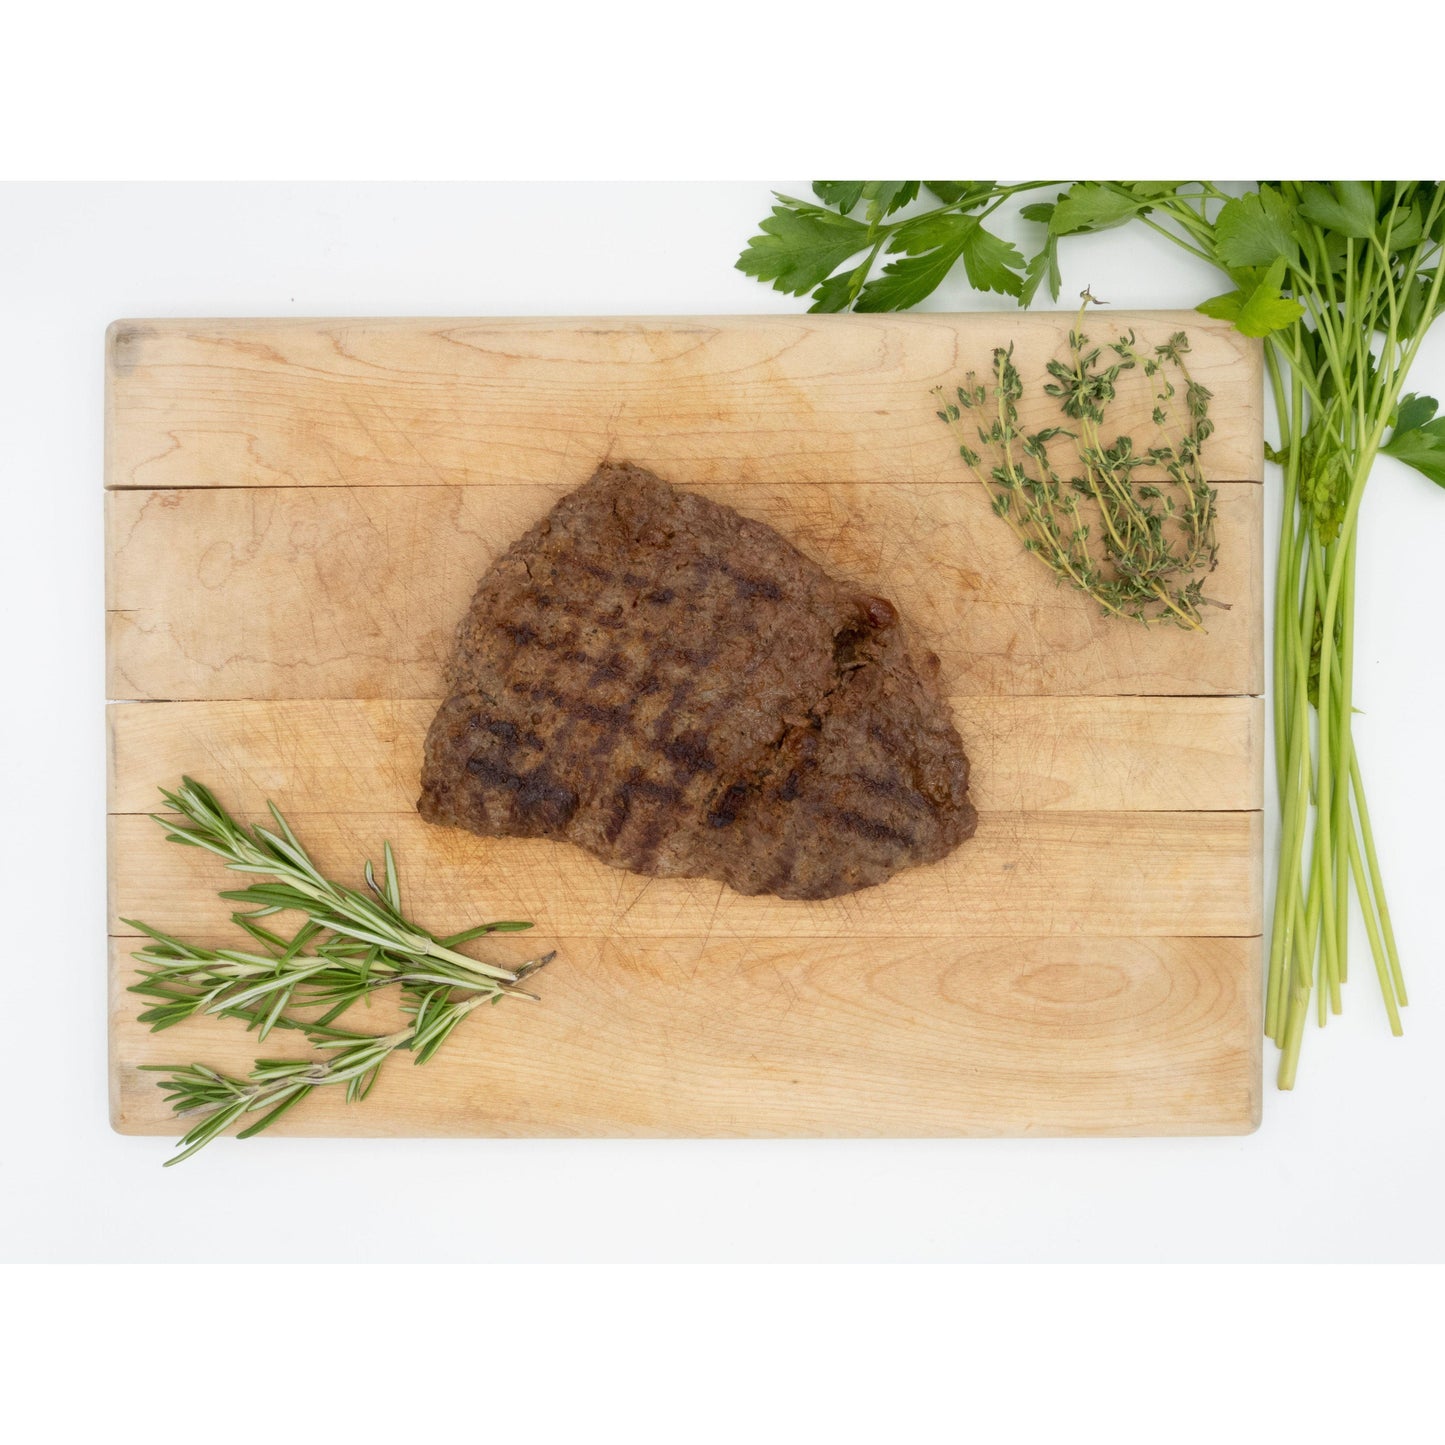 100% Grassfed Wagyu Beef Sirloin Tip Steak - Nutrient Farm